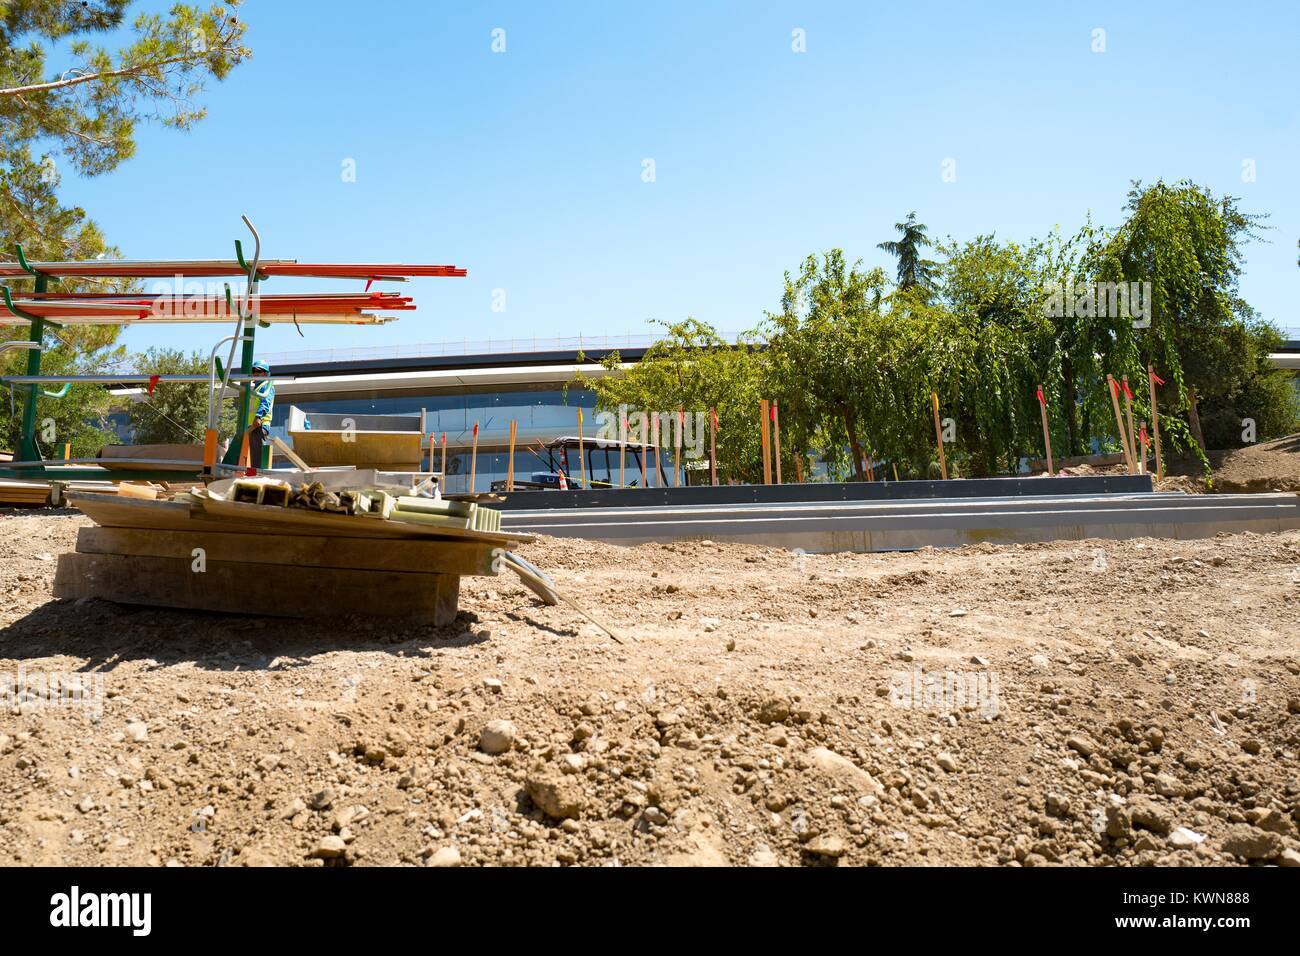 L'équipement de construction et la saleté sont visibles à l'Apple Park, connu familièrement comme "le vaisseau spatial", le nouveau quartier général d'Apple Inc dans la Silicon Valley ville de Cupertino, Californie, 25 juillet 2017. Banque D'Images